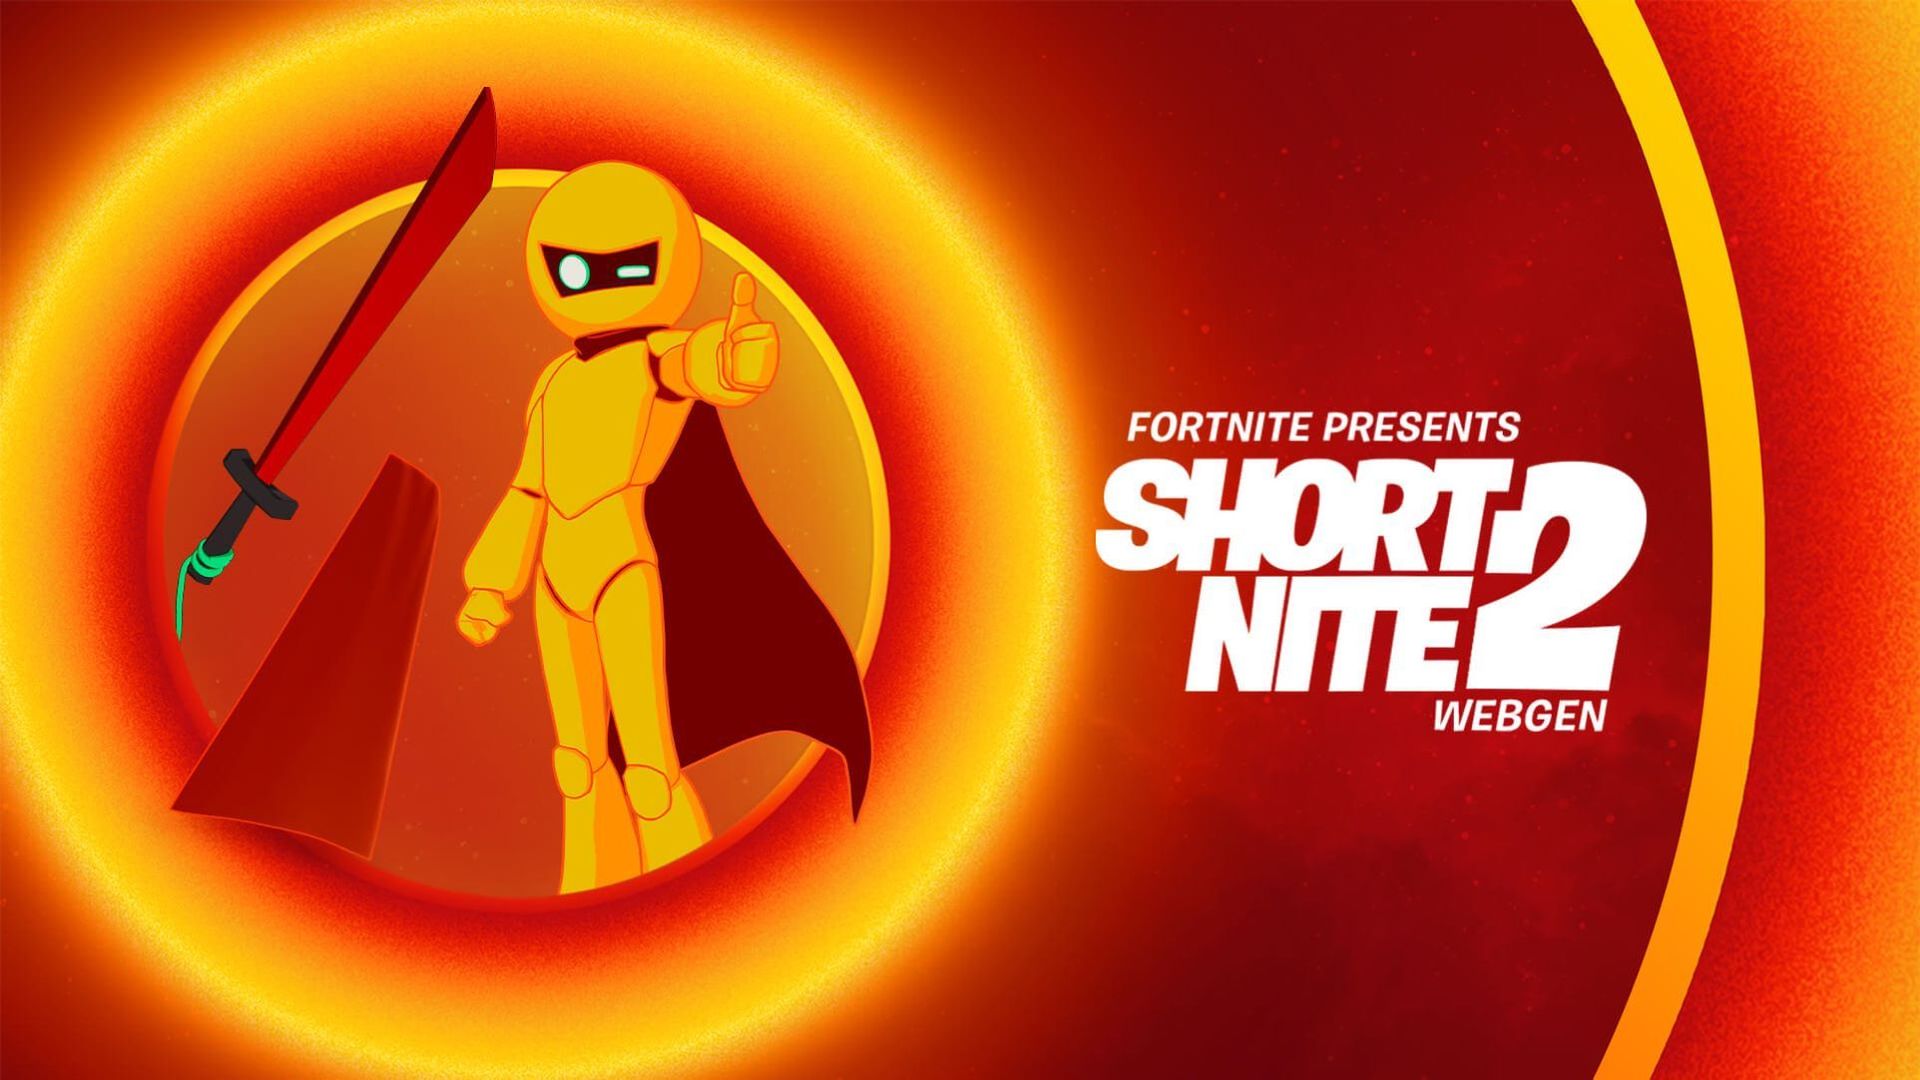 Le Short Nite 2 sera diffusé pendant 48 heures sans interruption sur Fortnite Party Royale.